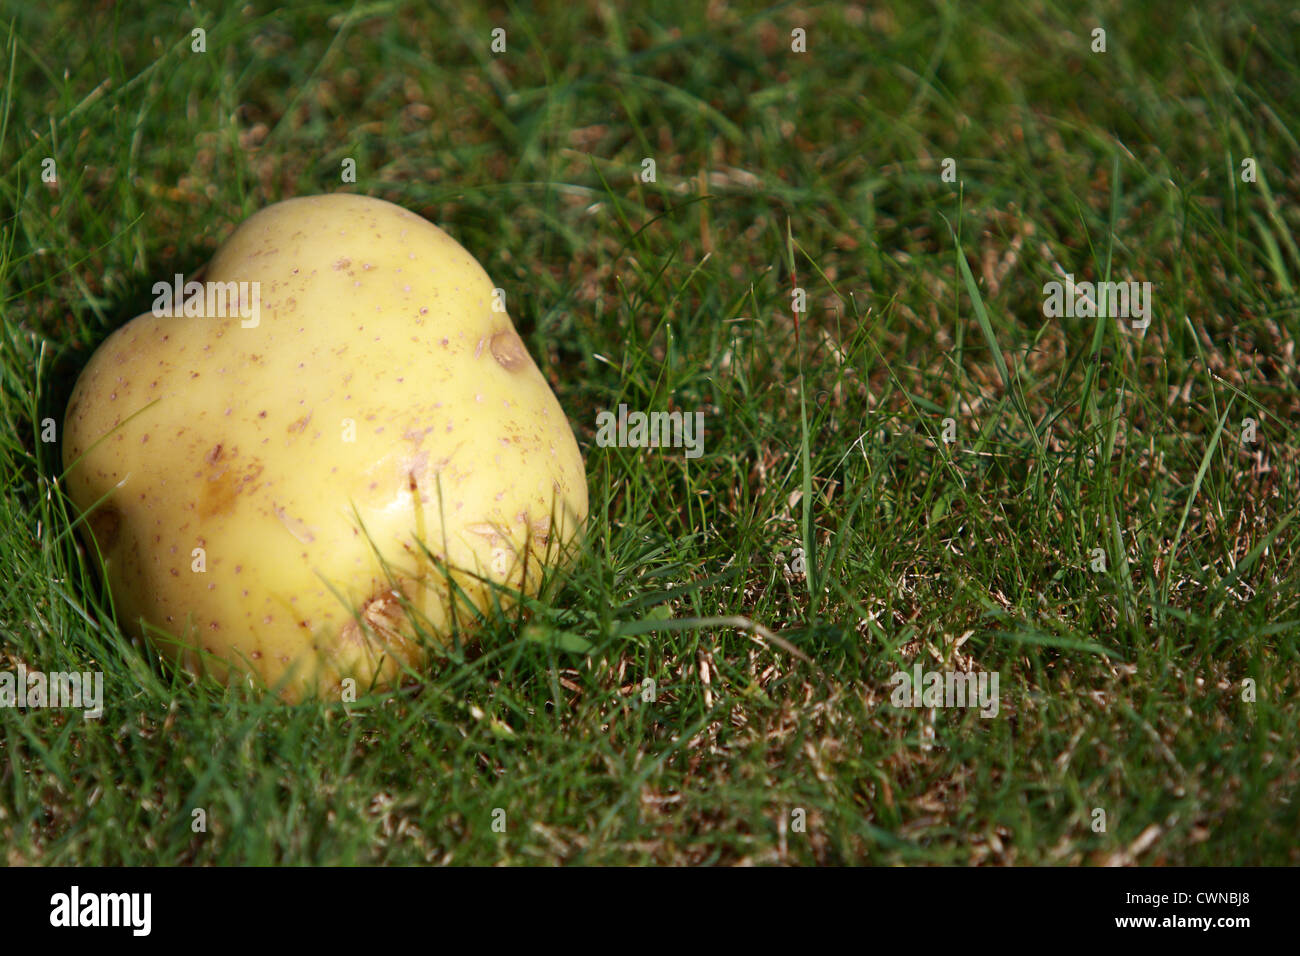 Una patata sobre el césped Foto de stock